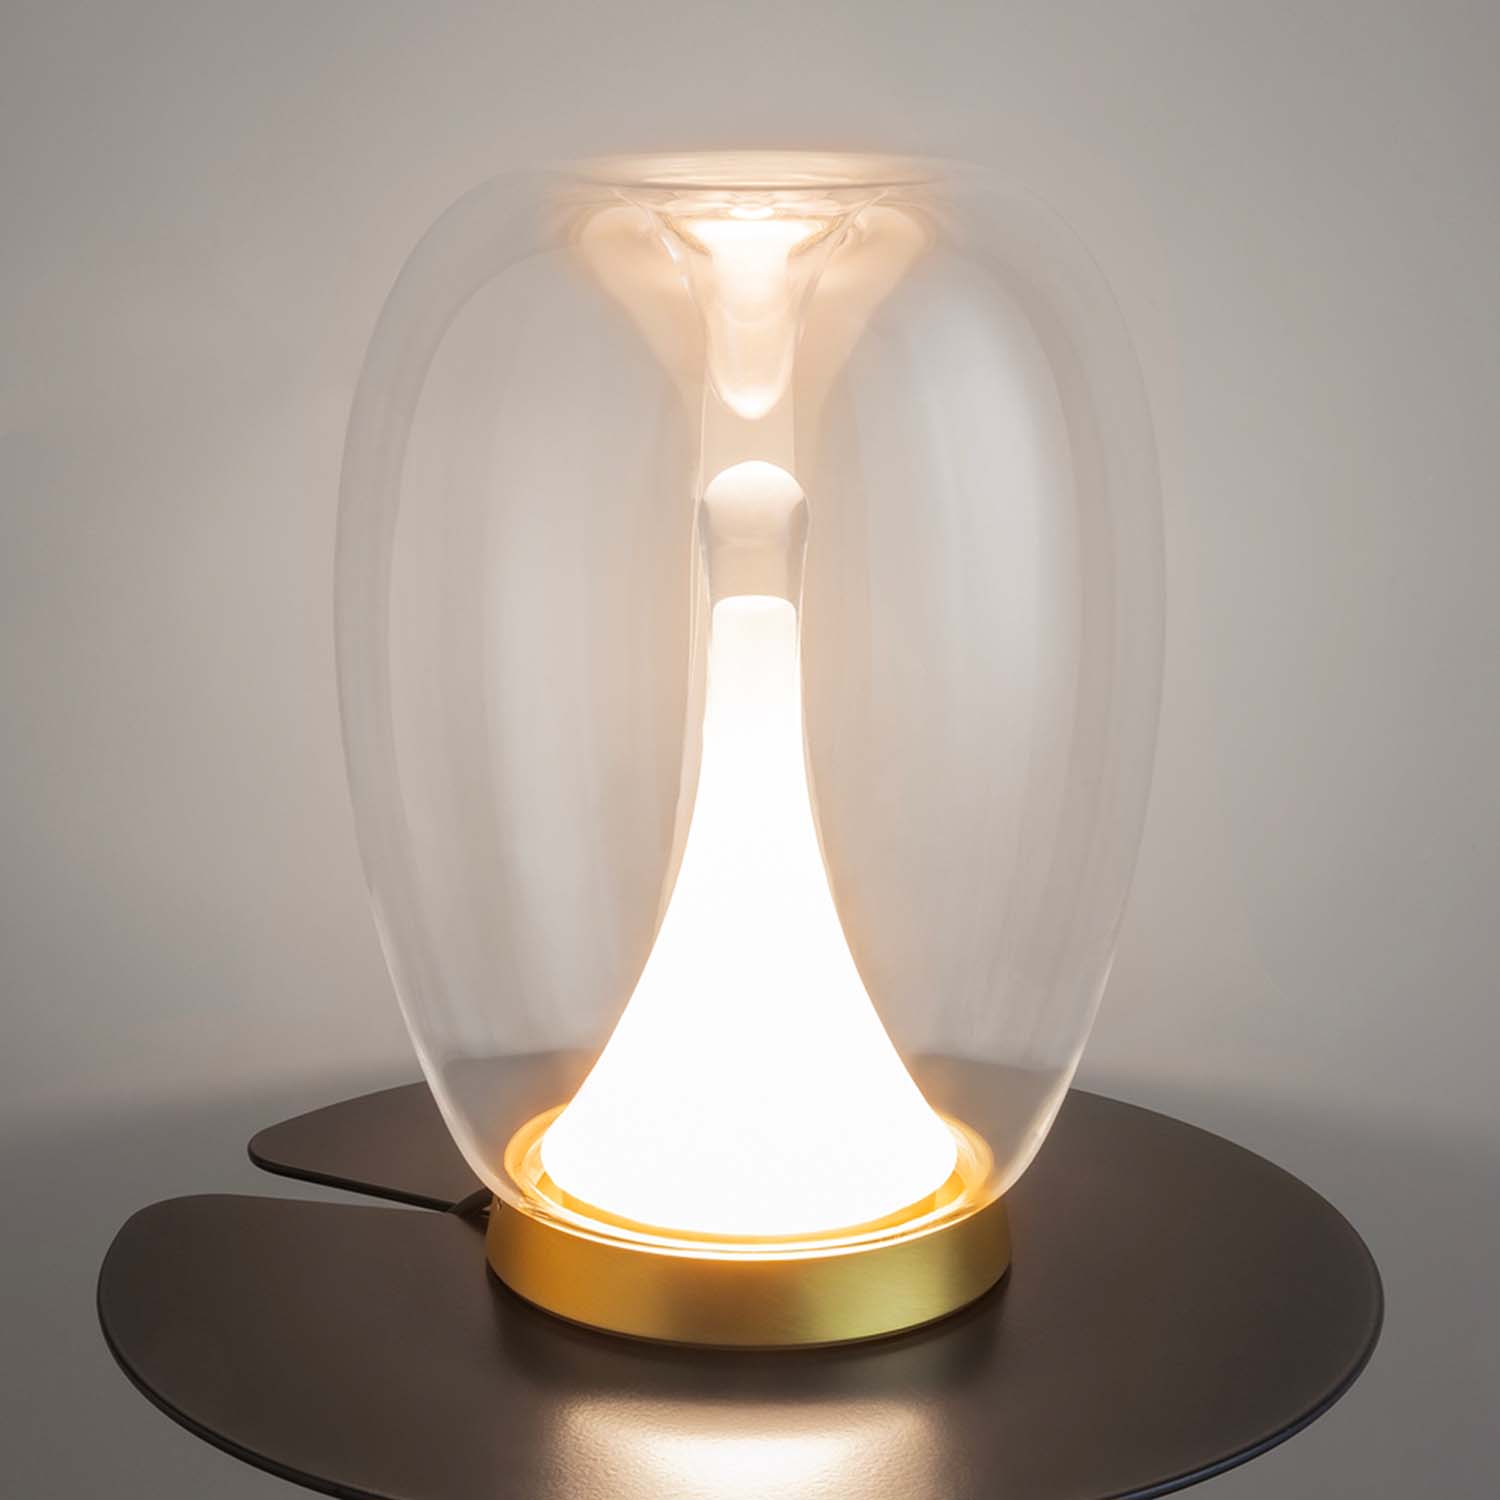 SPLASH – Integrierte Designer-LED-Tischleuchte aus Glas